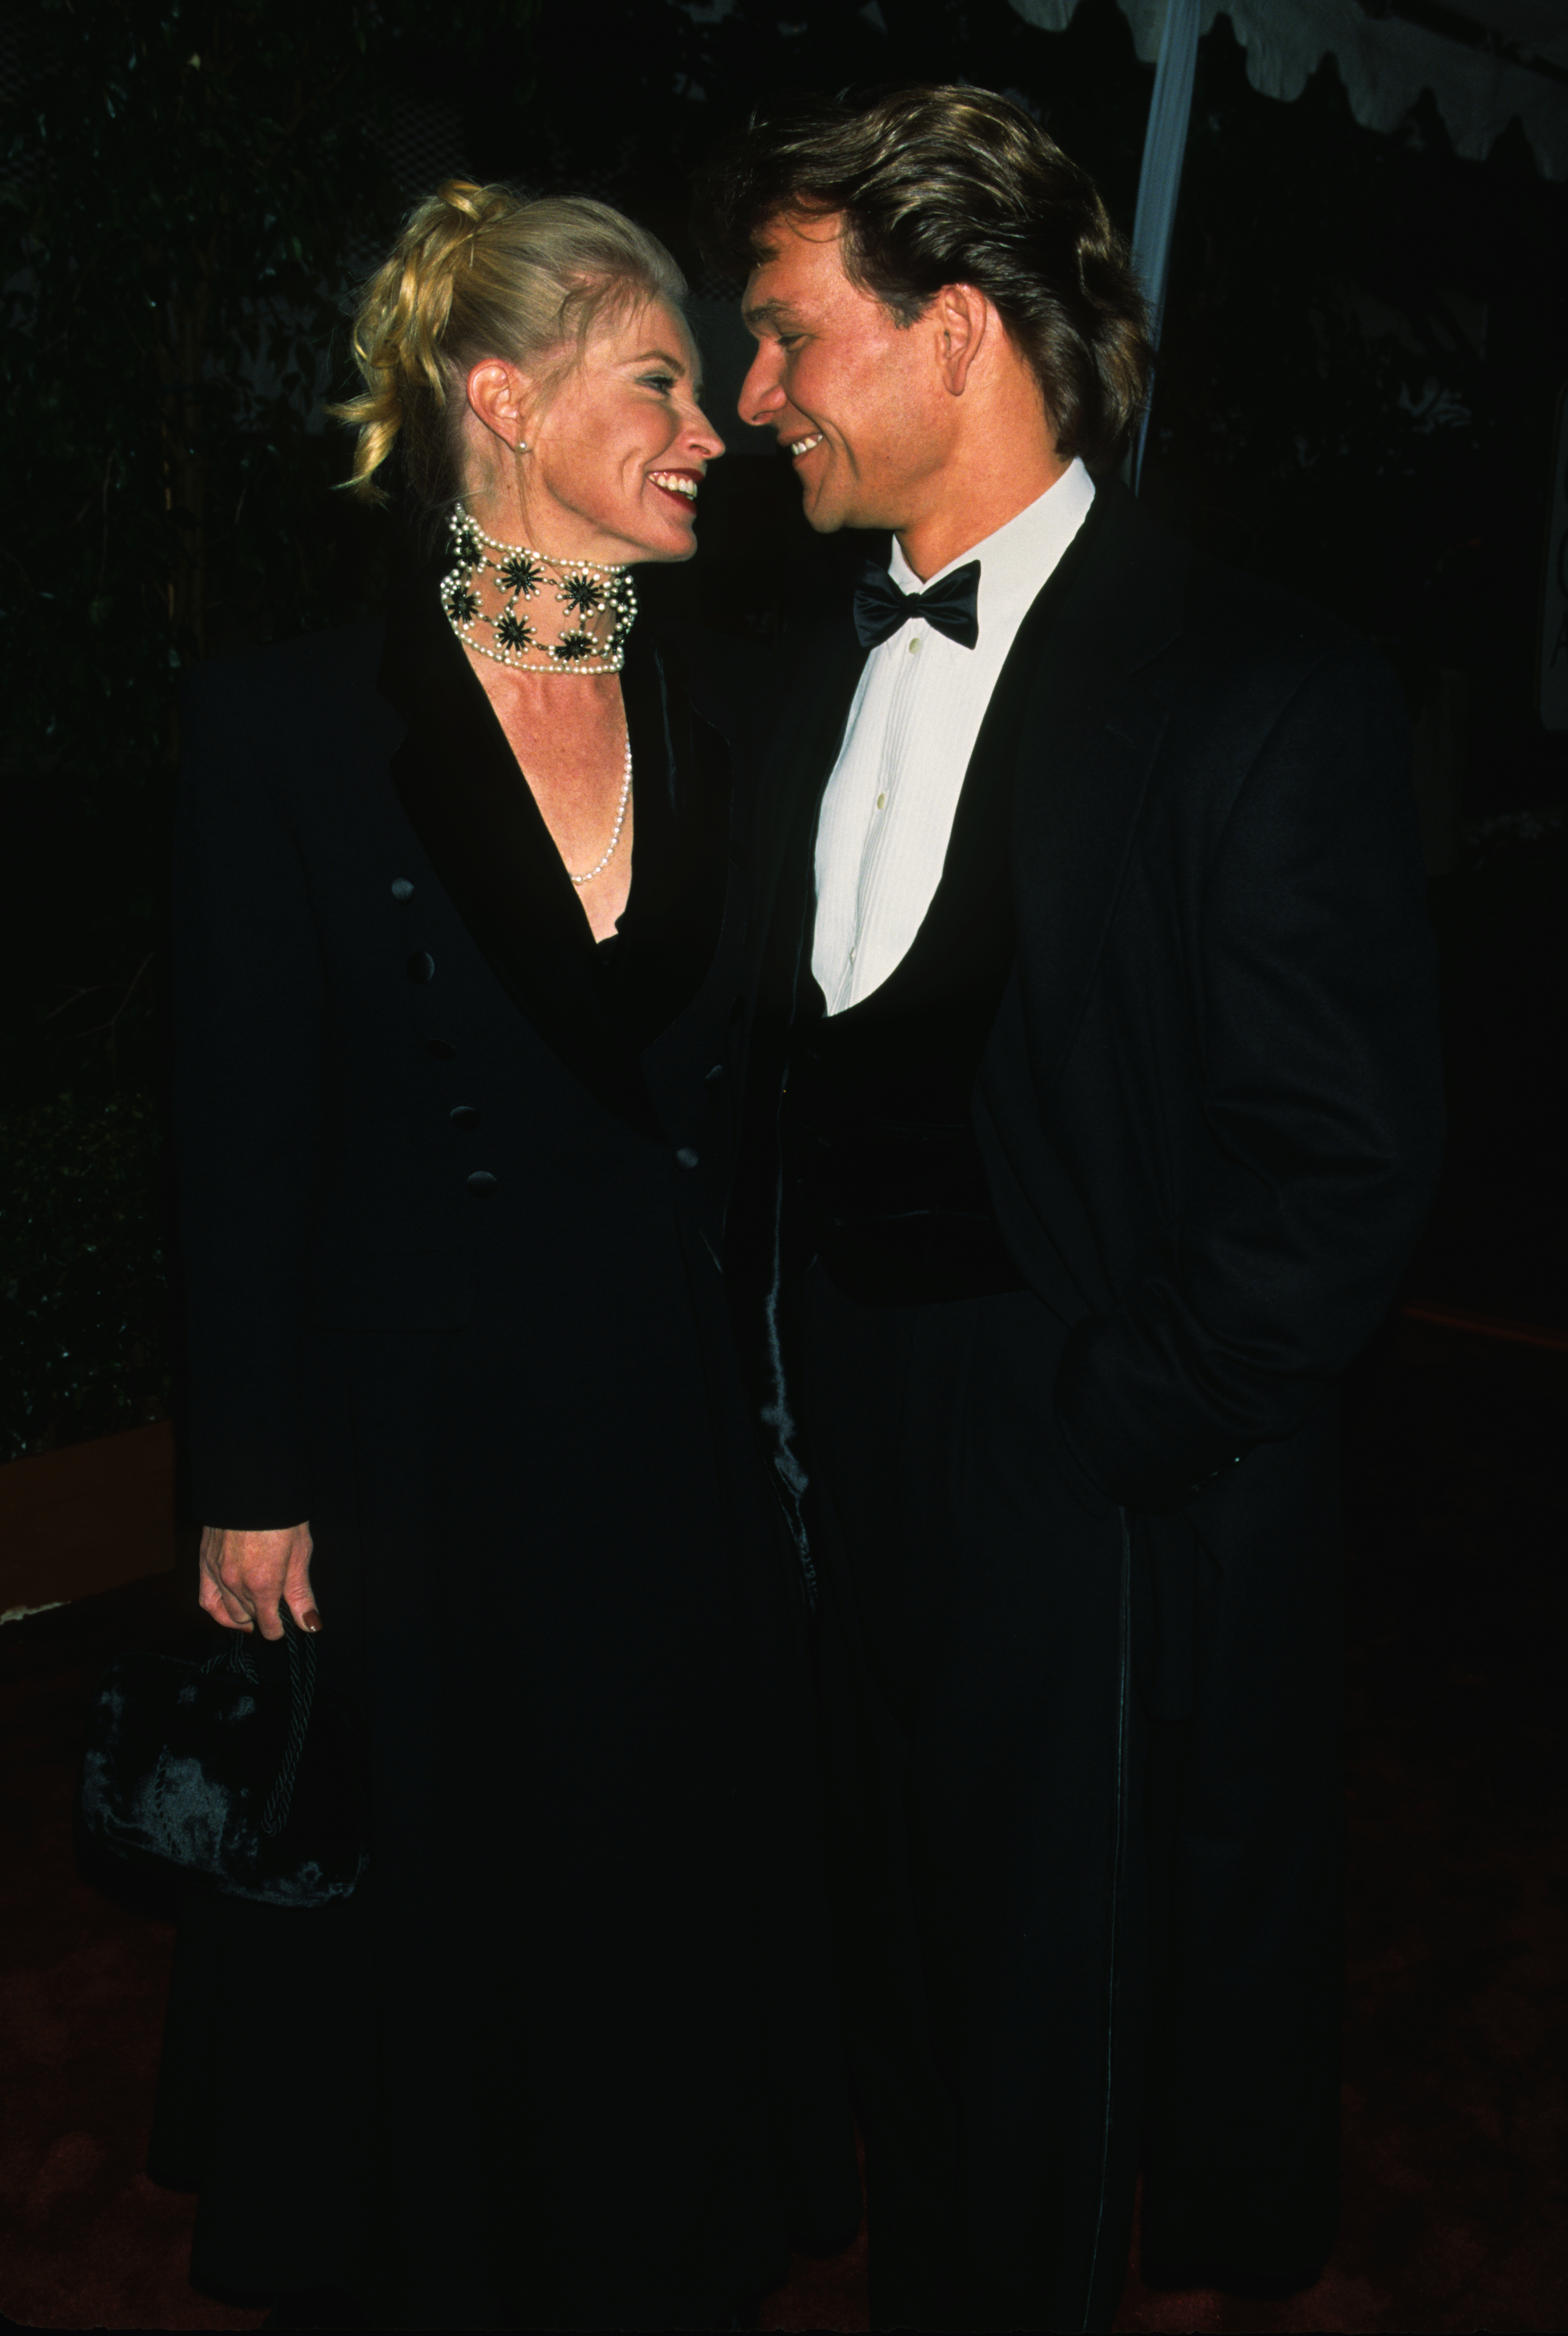 Patrick Swayze et Lisa Niemi à la 61e cérémonie annuelle des Oscars le 29 mars 1989 à Los Angeles en Californie | Source : Getty Images